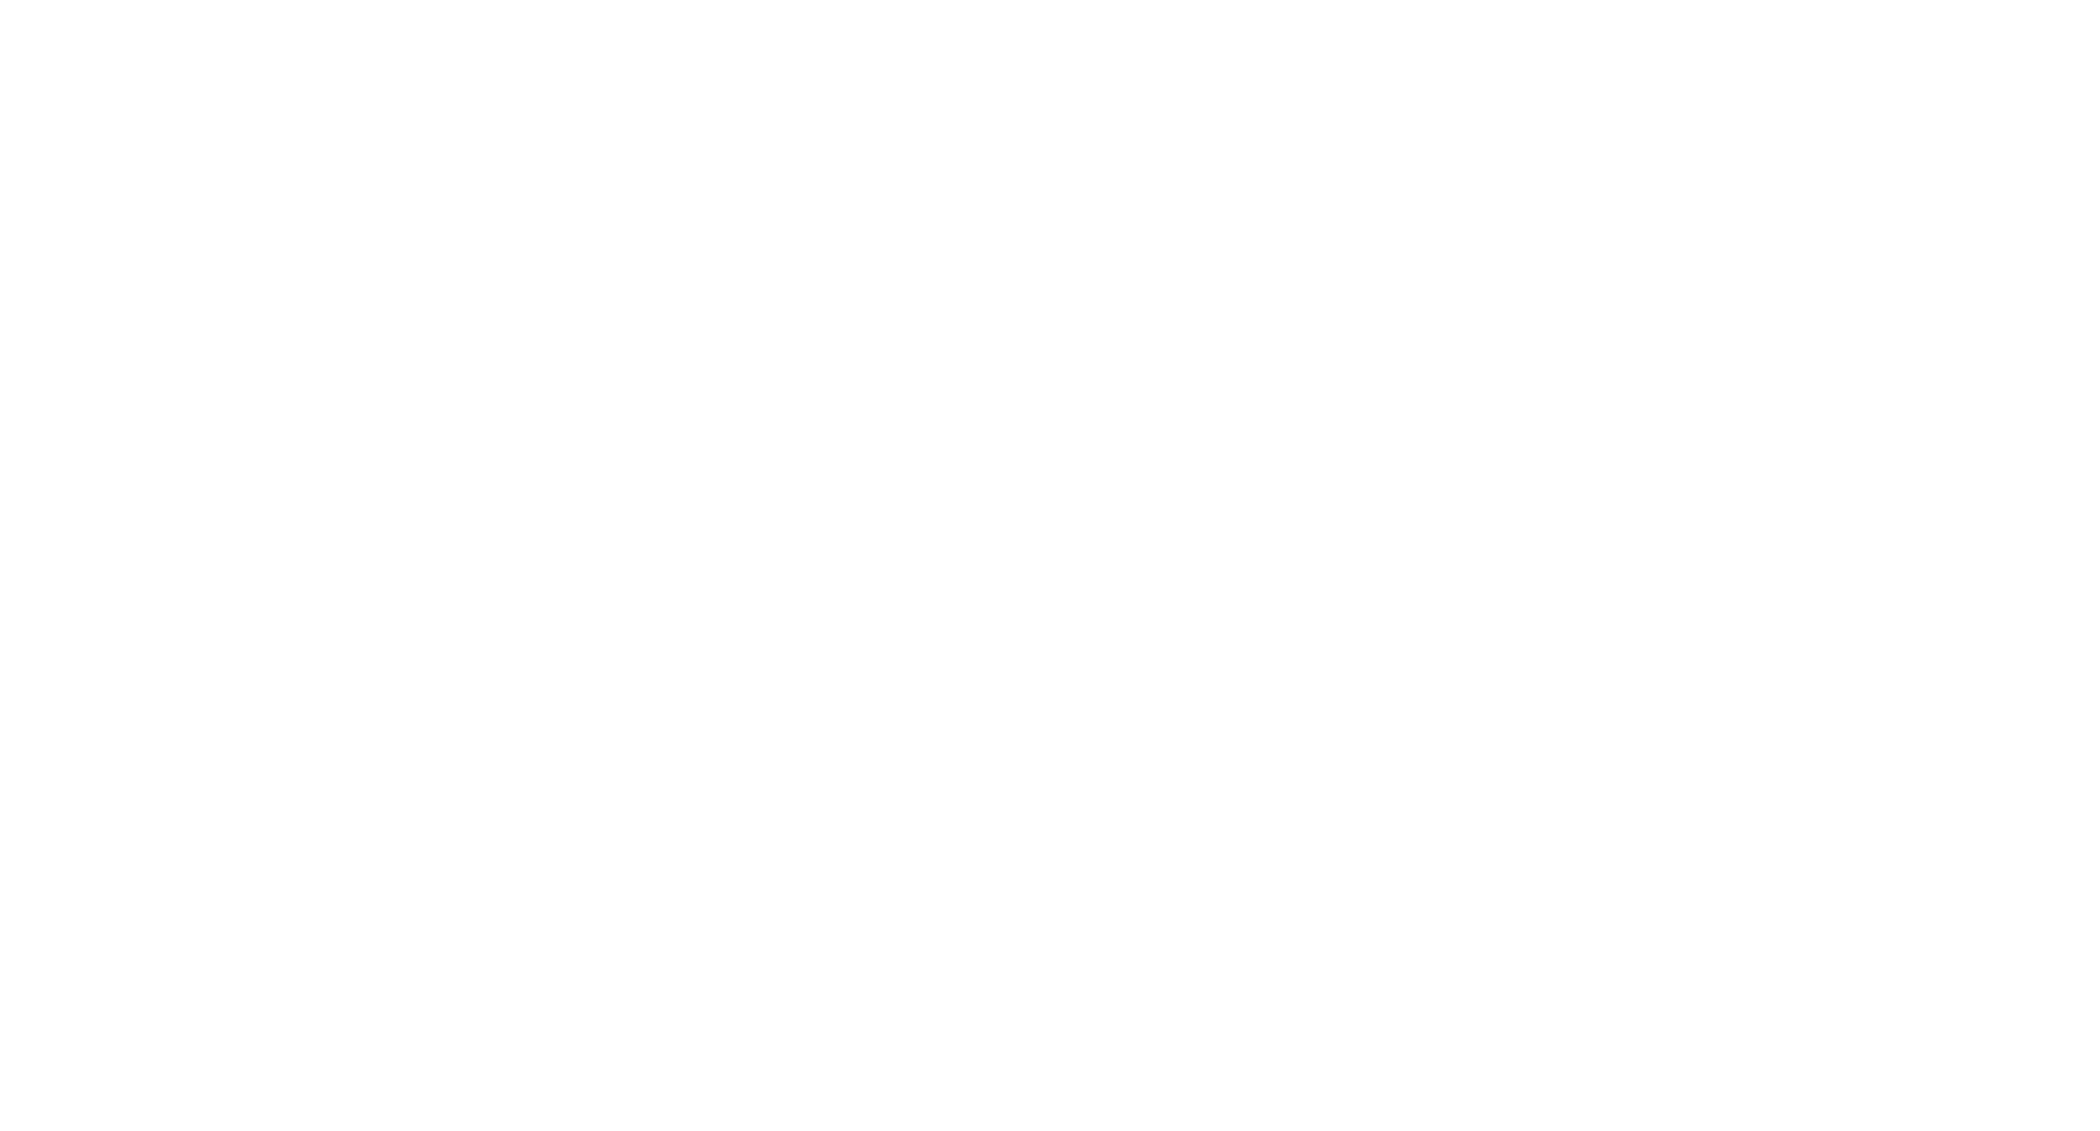 Bela Family Dentistry of White Knoll